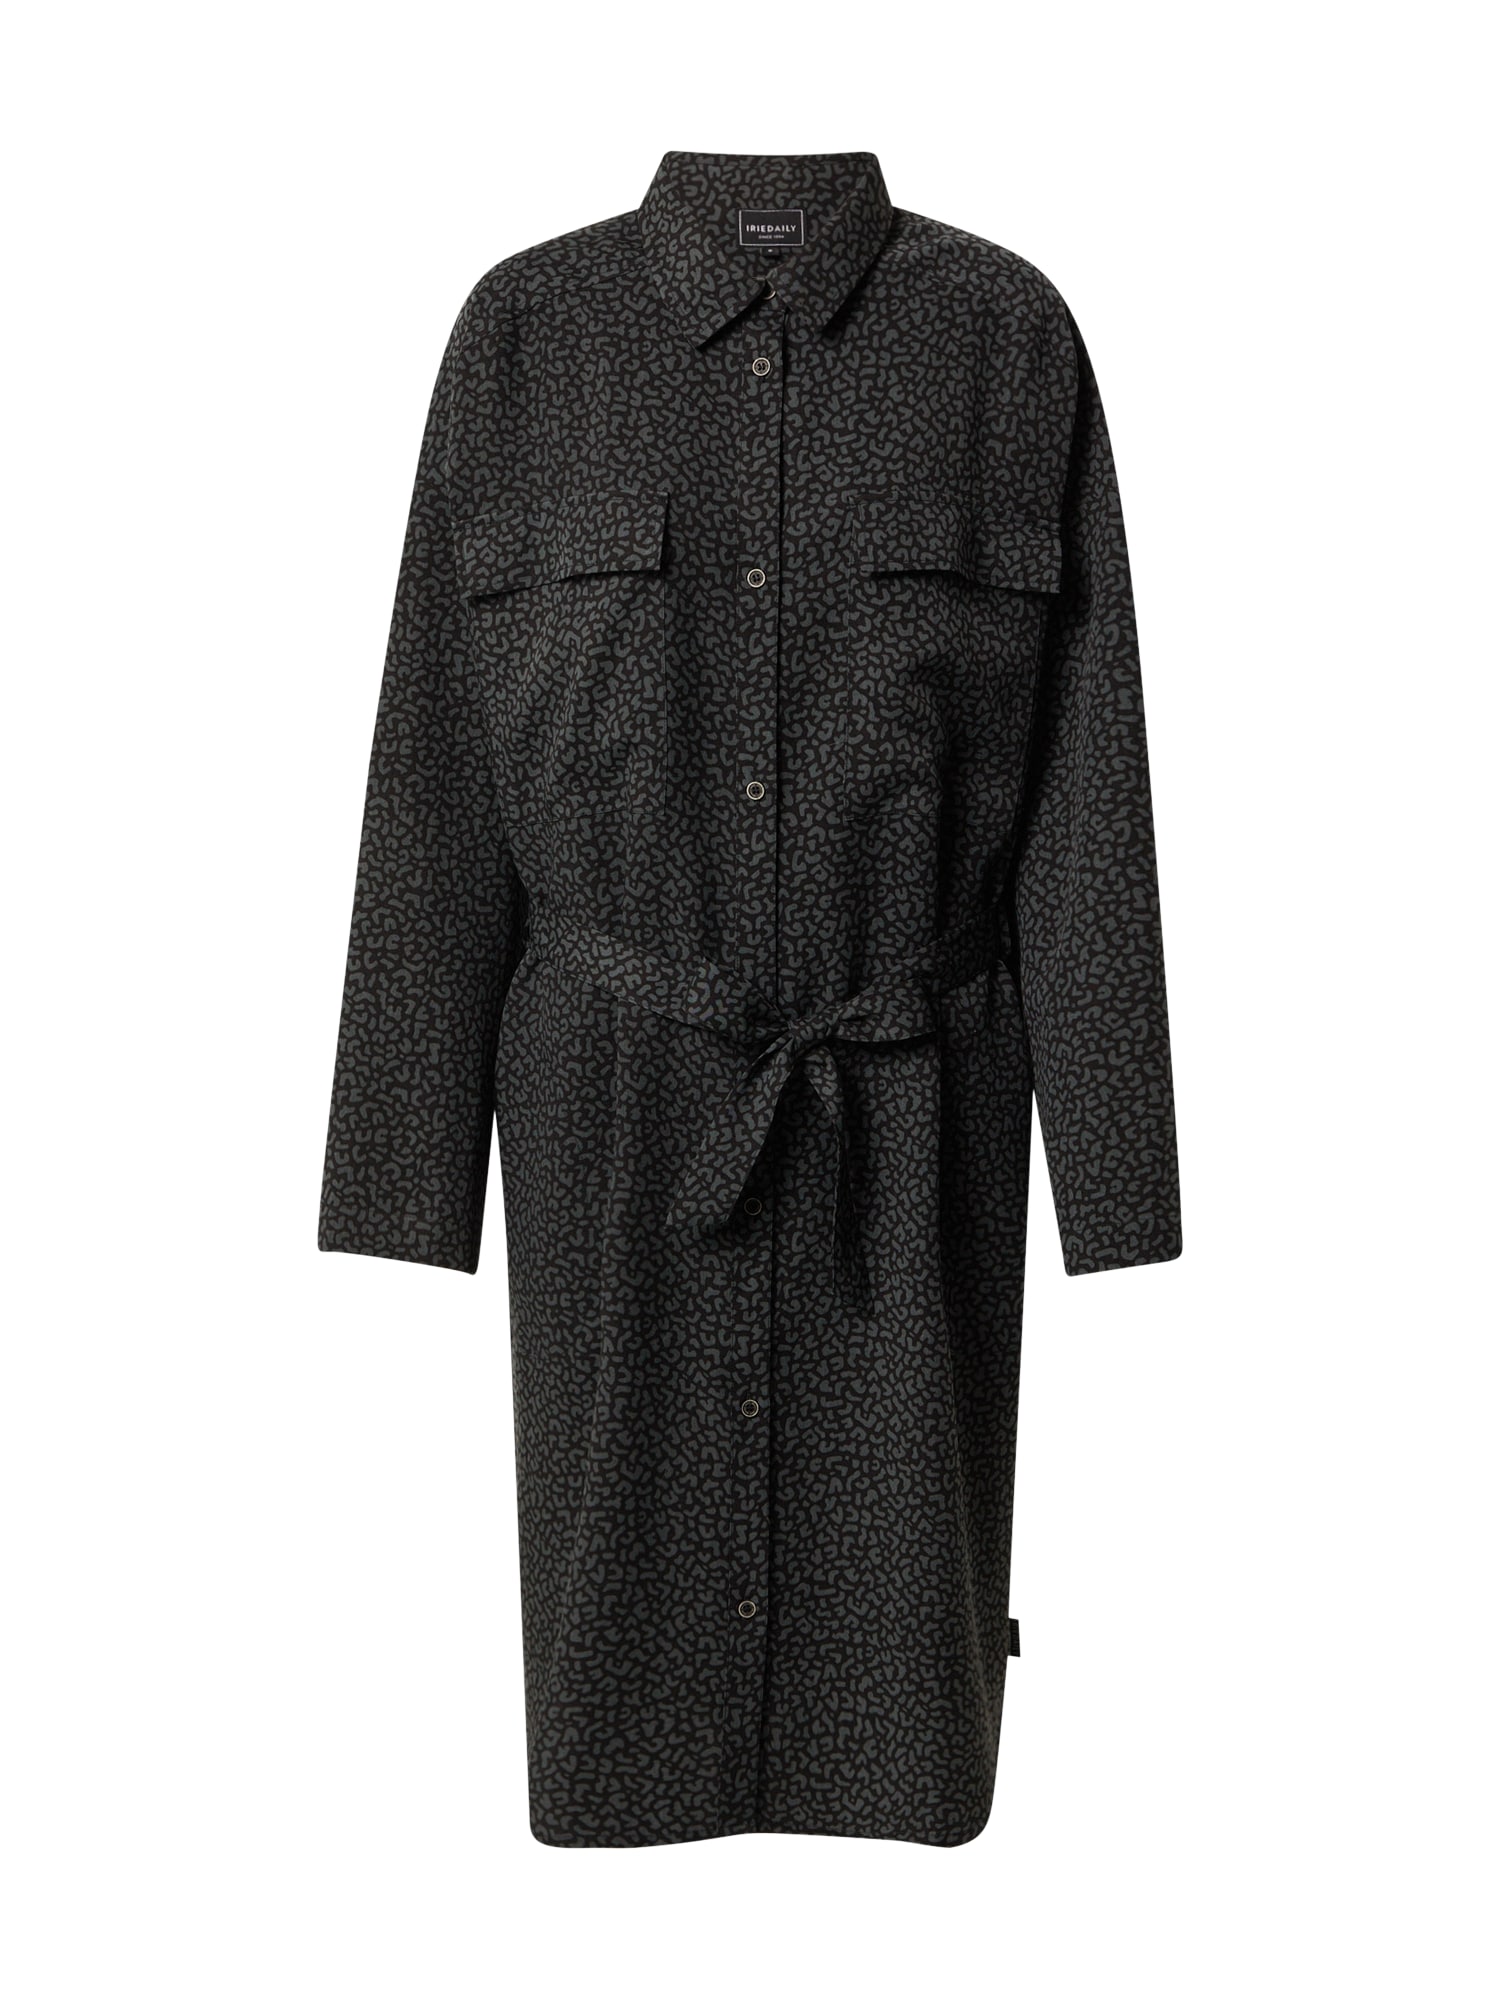 Iriedaily Košilové šaty 'Civic' antracitová / černá